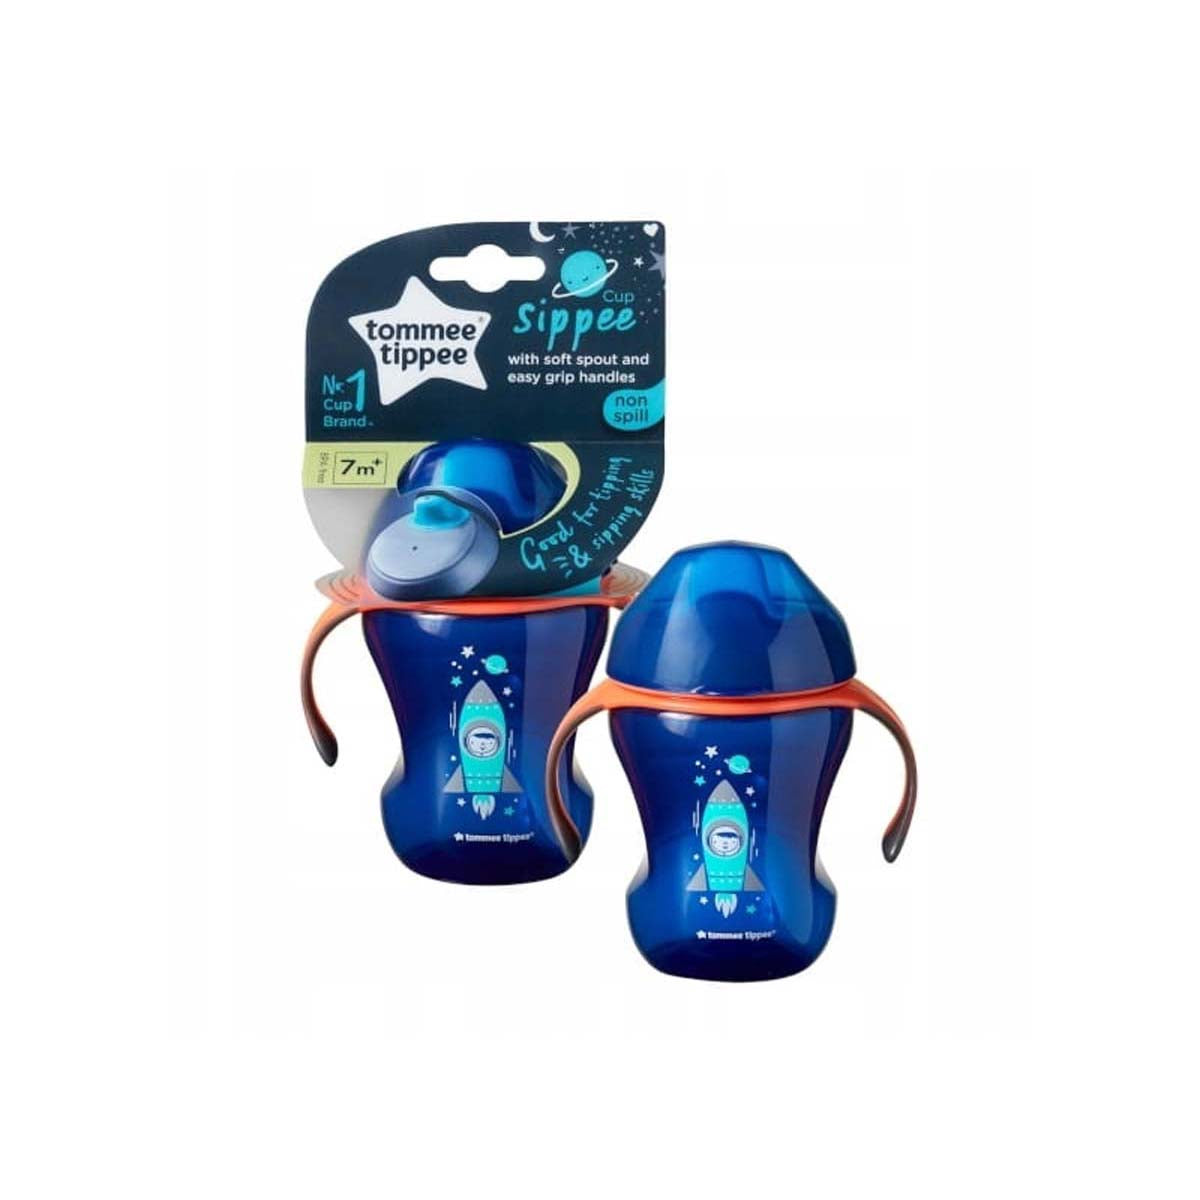 De Tommee Tippee tuitbeker blue orange 230 ml is een opvolgbeker die de overstap van fles/borst naar drinkbeker gemakkelijk maakt voor je baby. Met flexibele silicone tuit BPA-en lekvrij! Inhoud: 230 ml. Vanaf 7+M. VanZus.